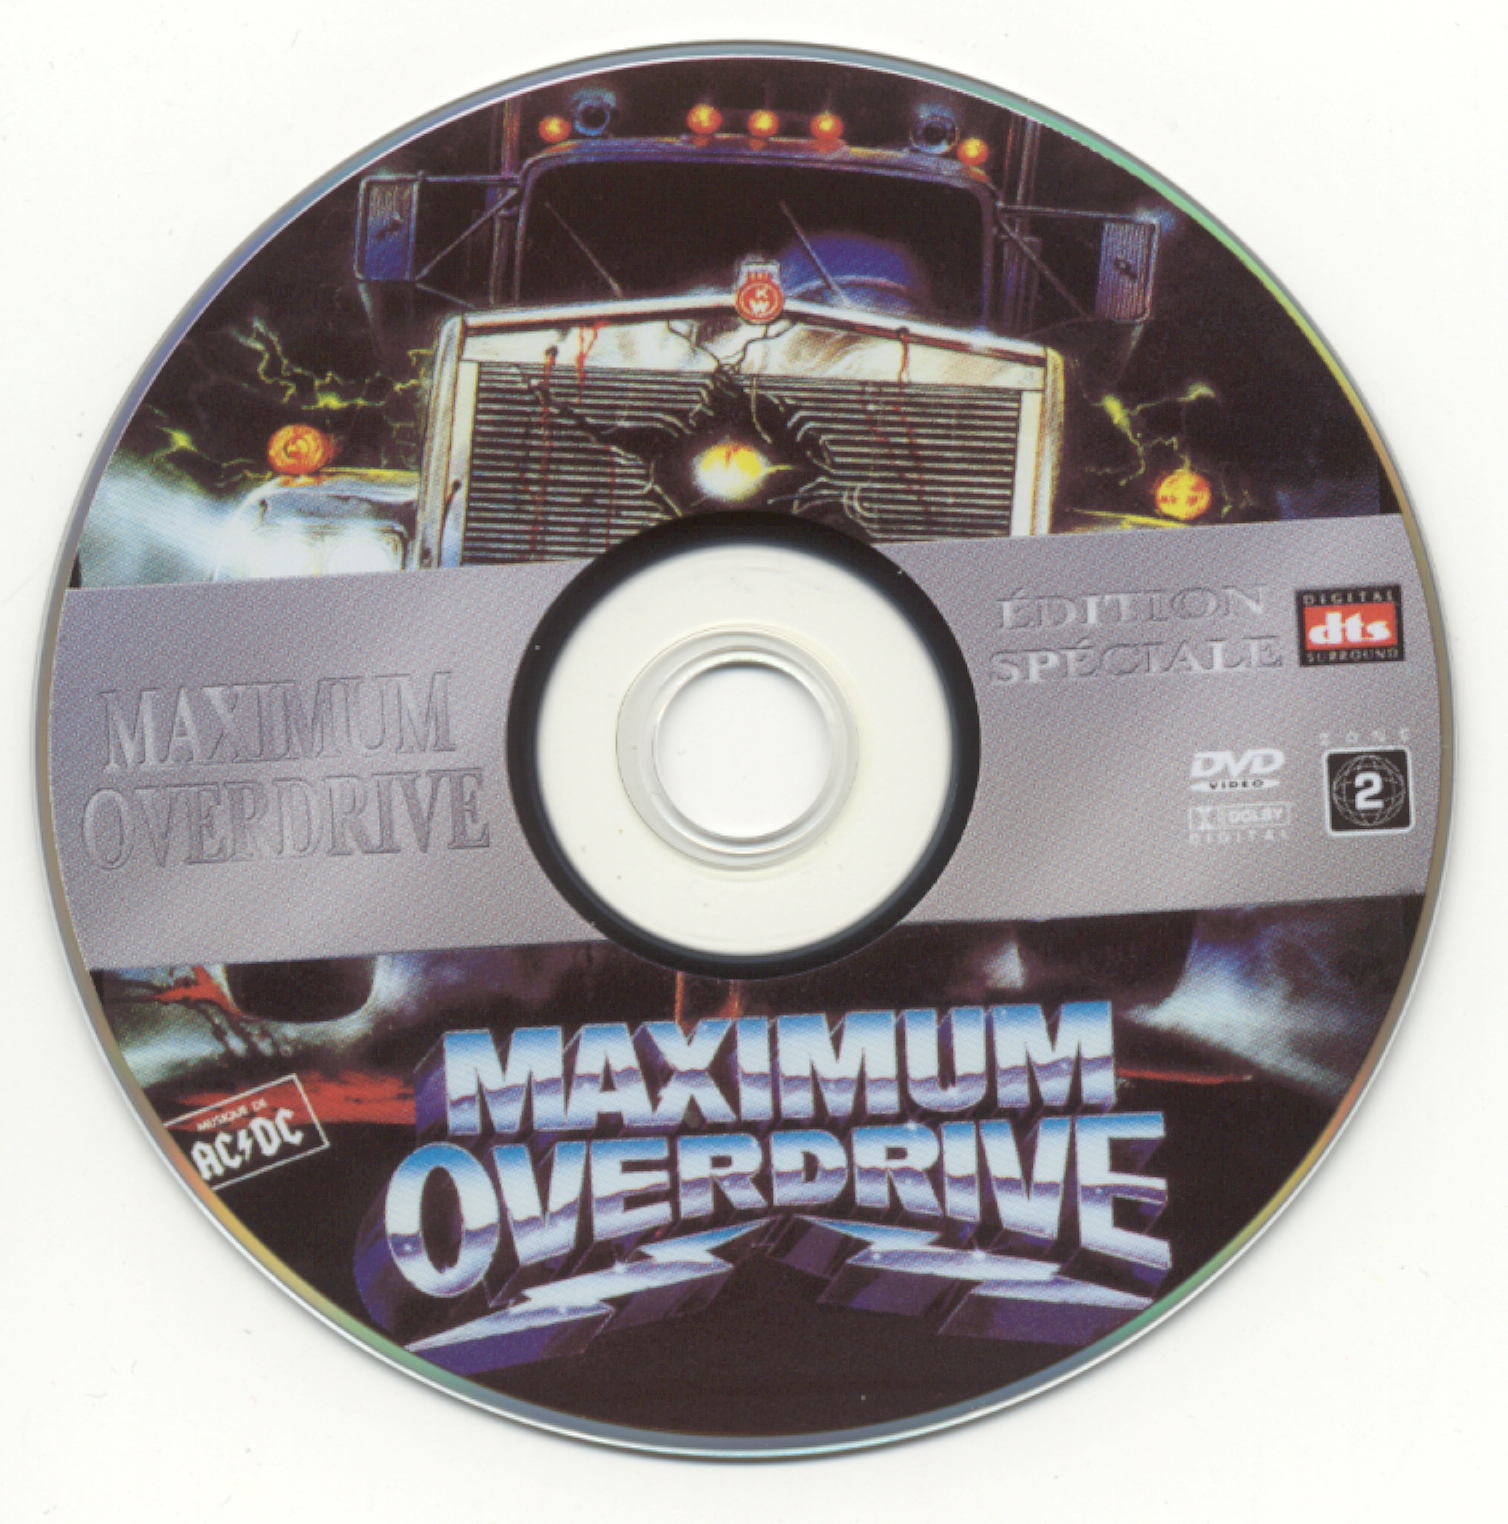 Maximum overdrive